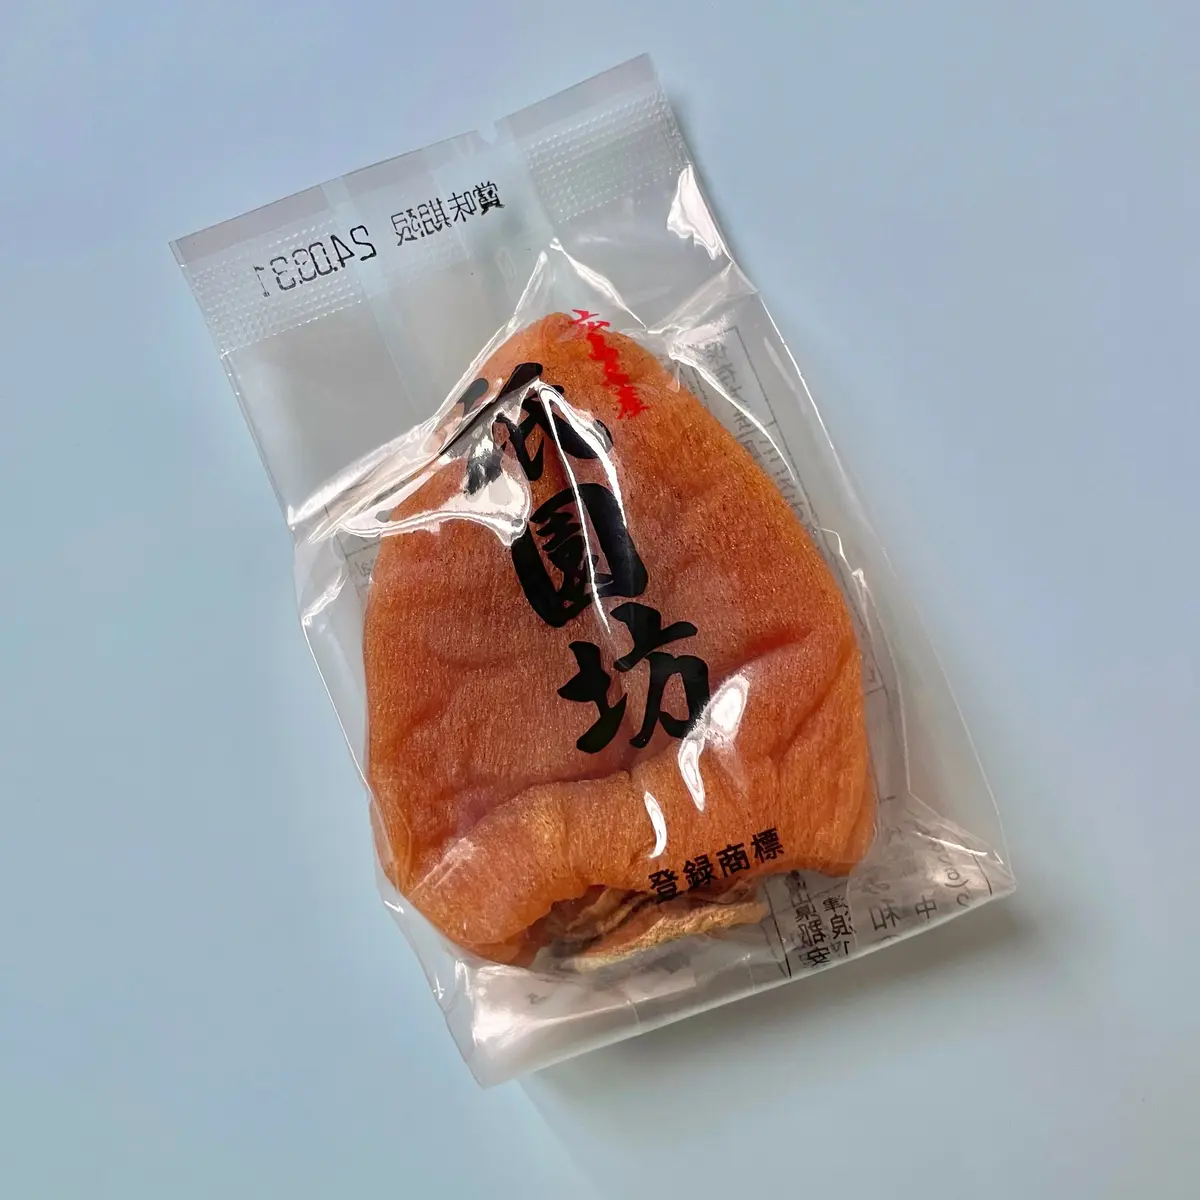 広島土産におすすめ、柿の王様「祇園坊干し柿」 